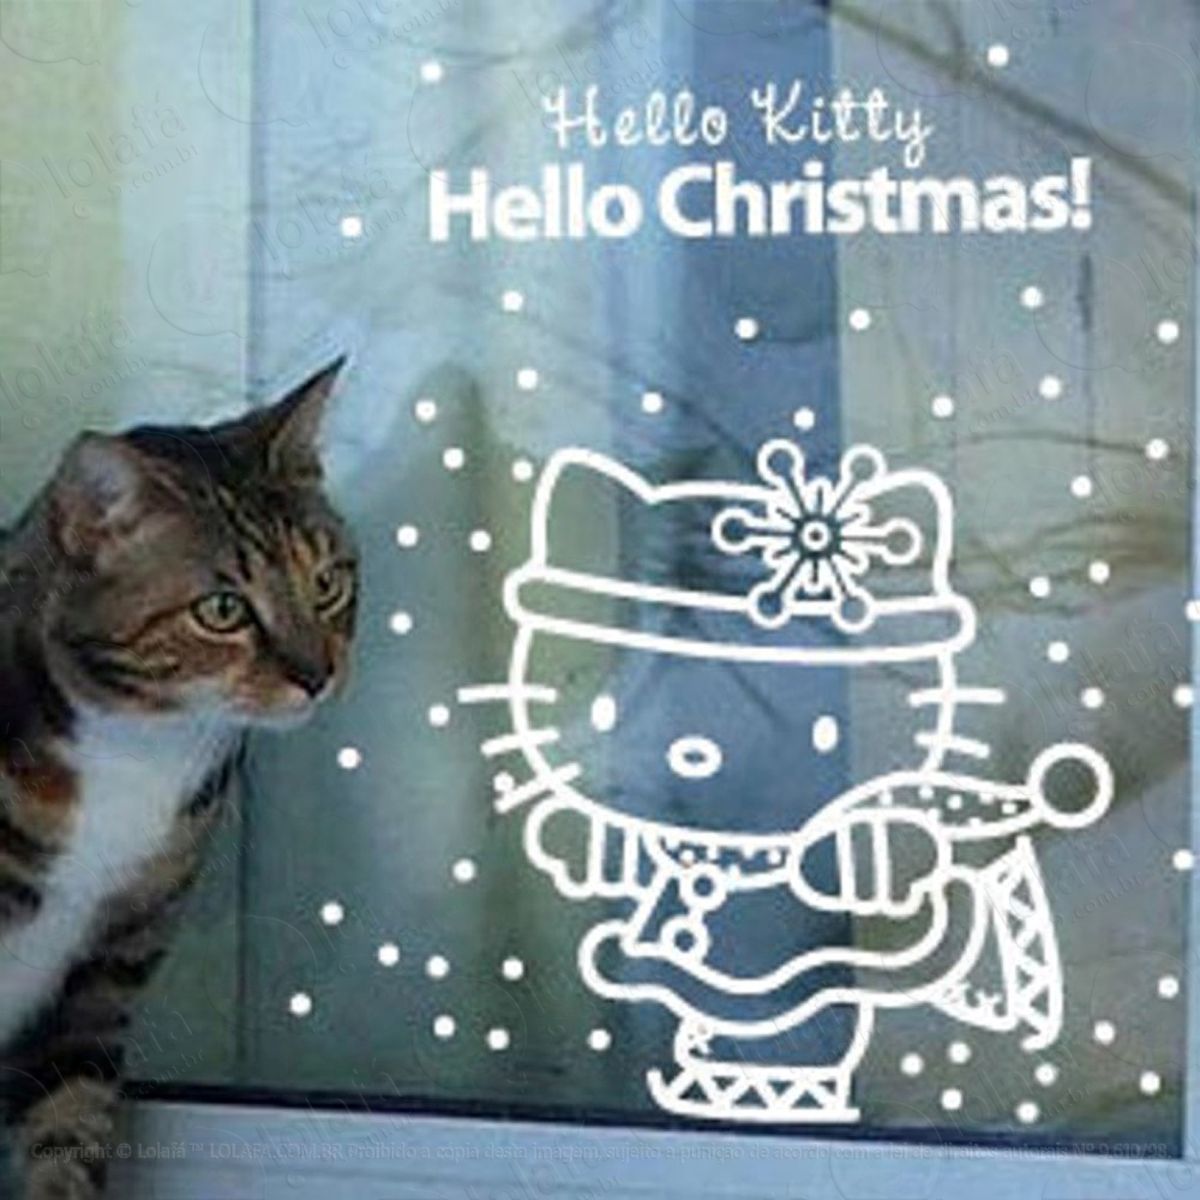 hello kitty adesivo de natal para vitrine, parede, porta de vidro - decoração natalina mod:151